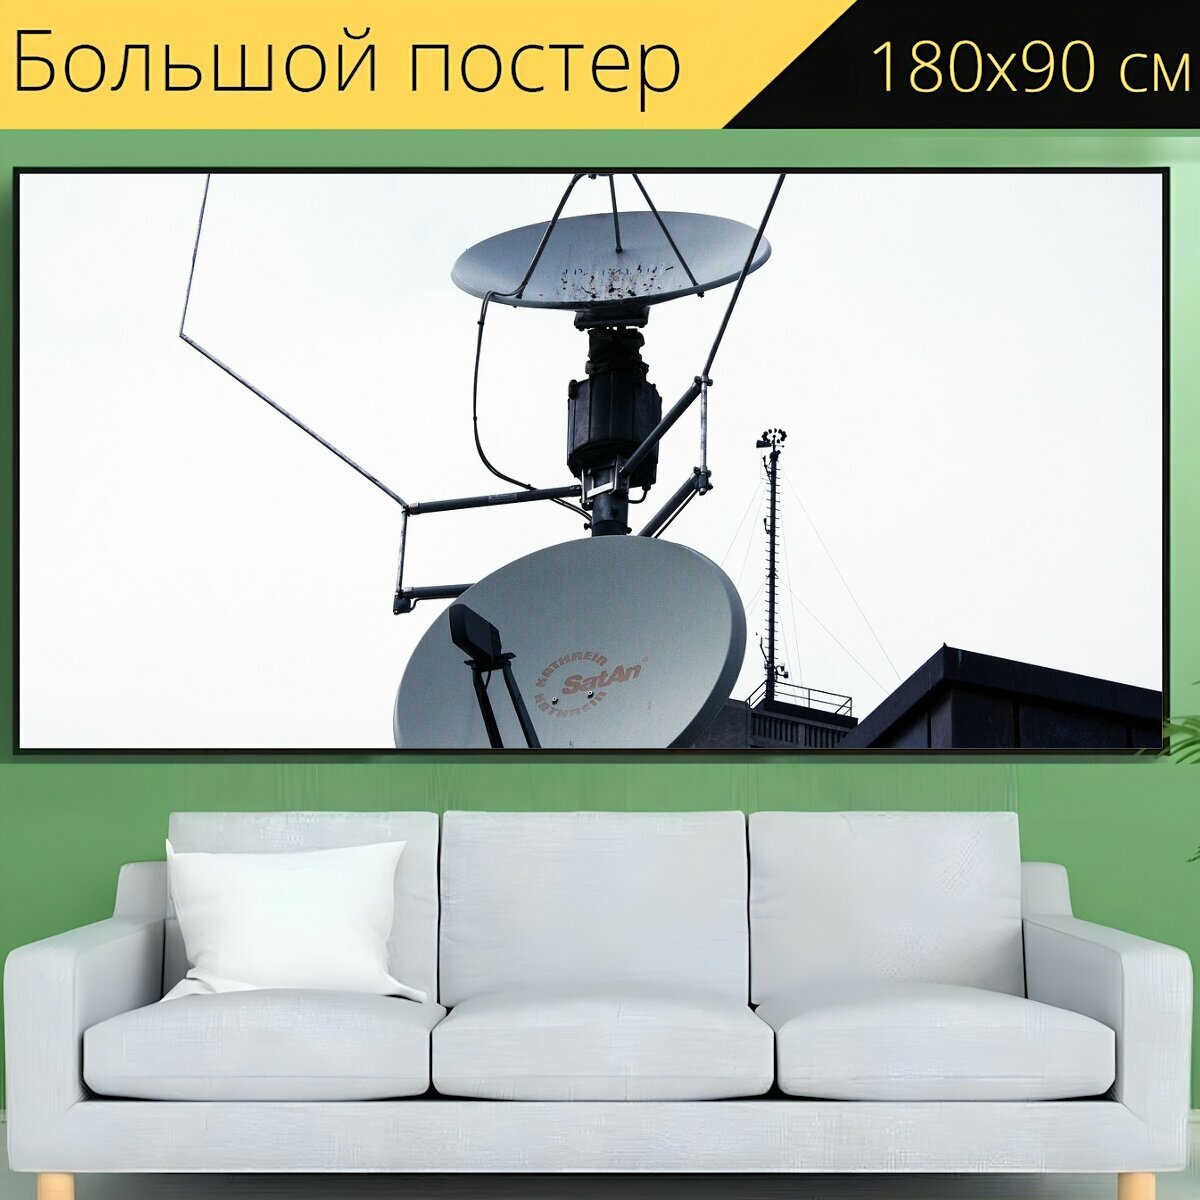 Большой постер "Параболические антенны, прием, спутниковое вещание" 180 x 90 см. для интерьера